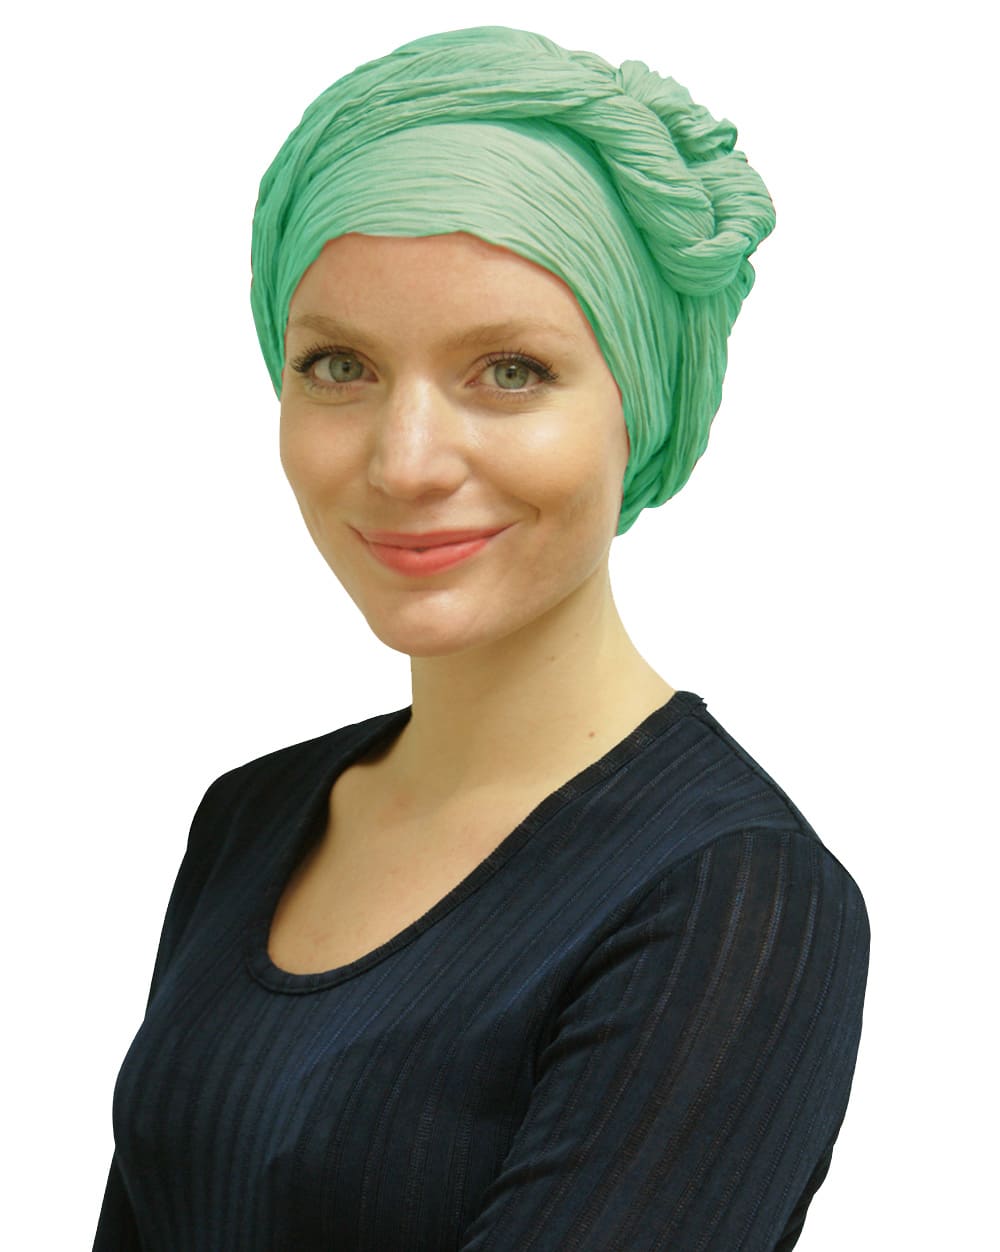 Woman wearing green head scarf turban